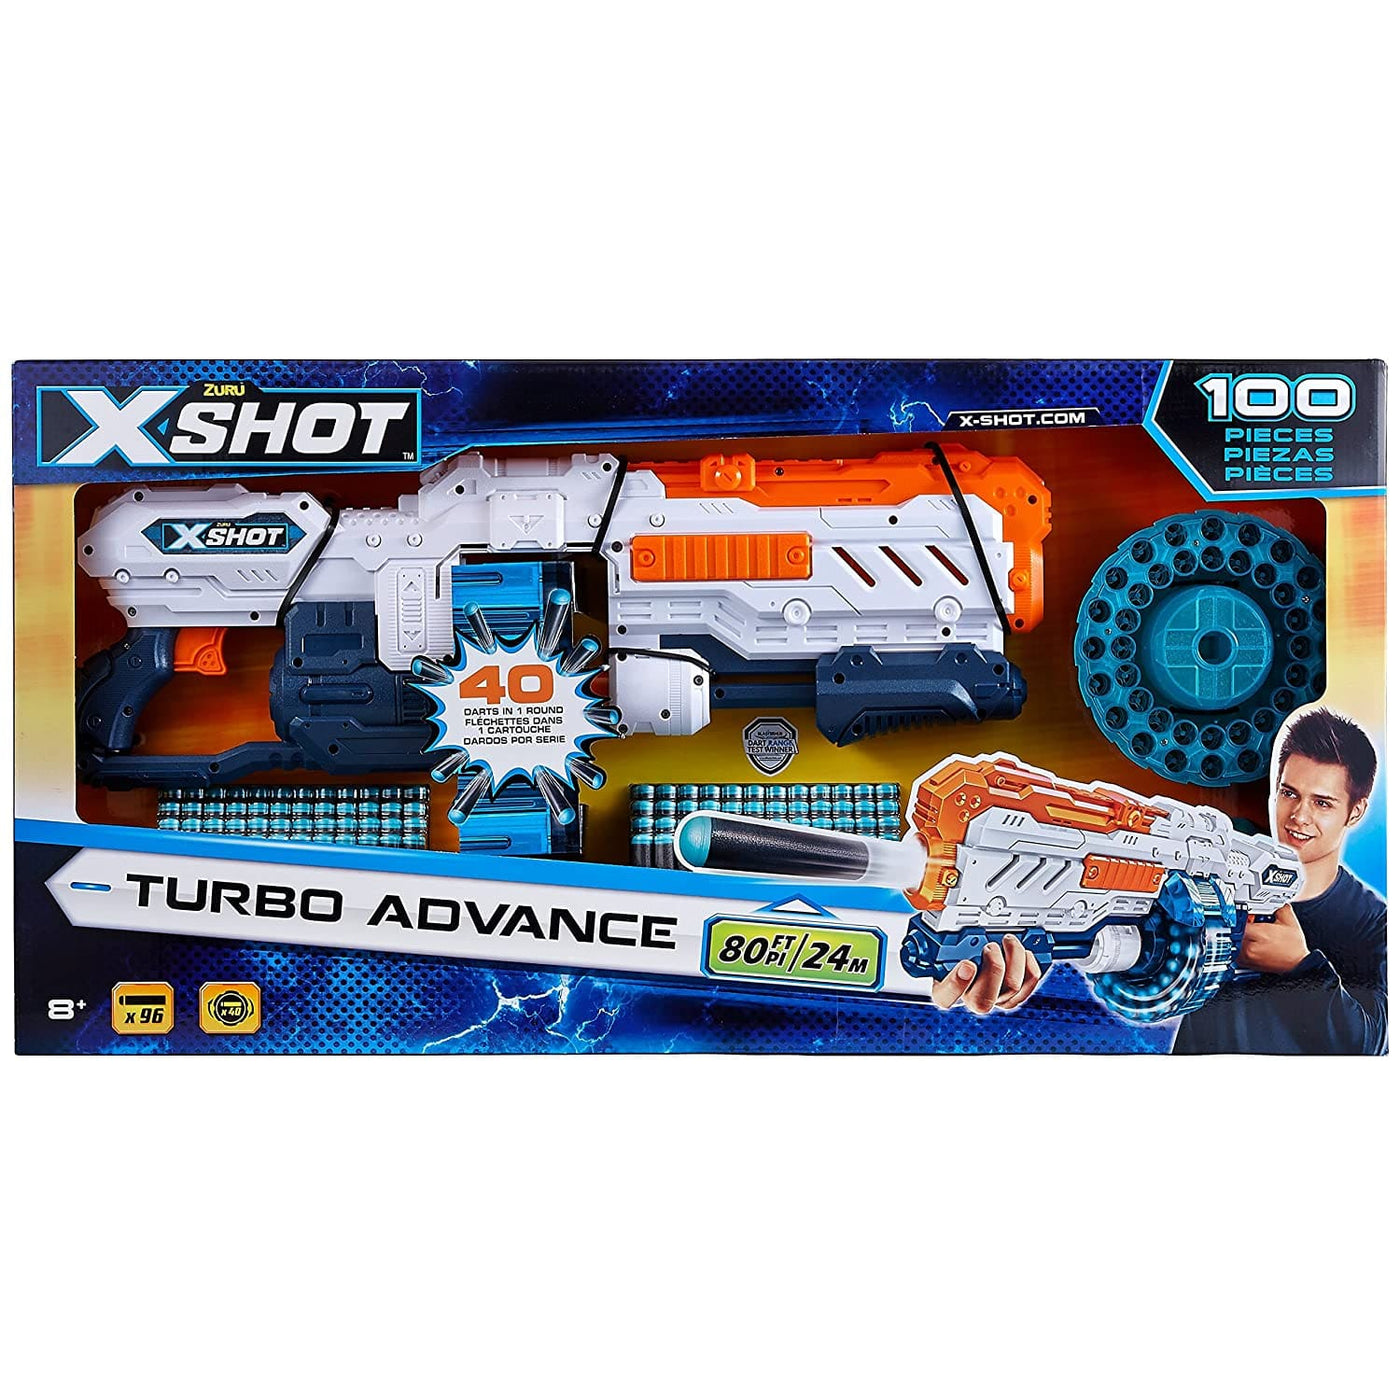 Turbo Advance - X SHOT | ZURU by Zuru, New Zealand Toy